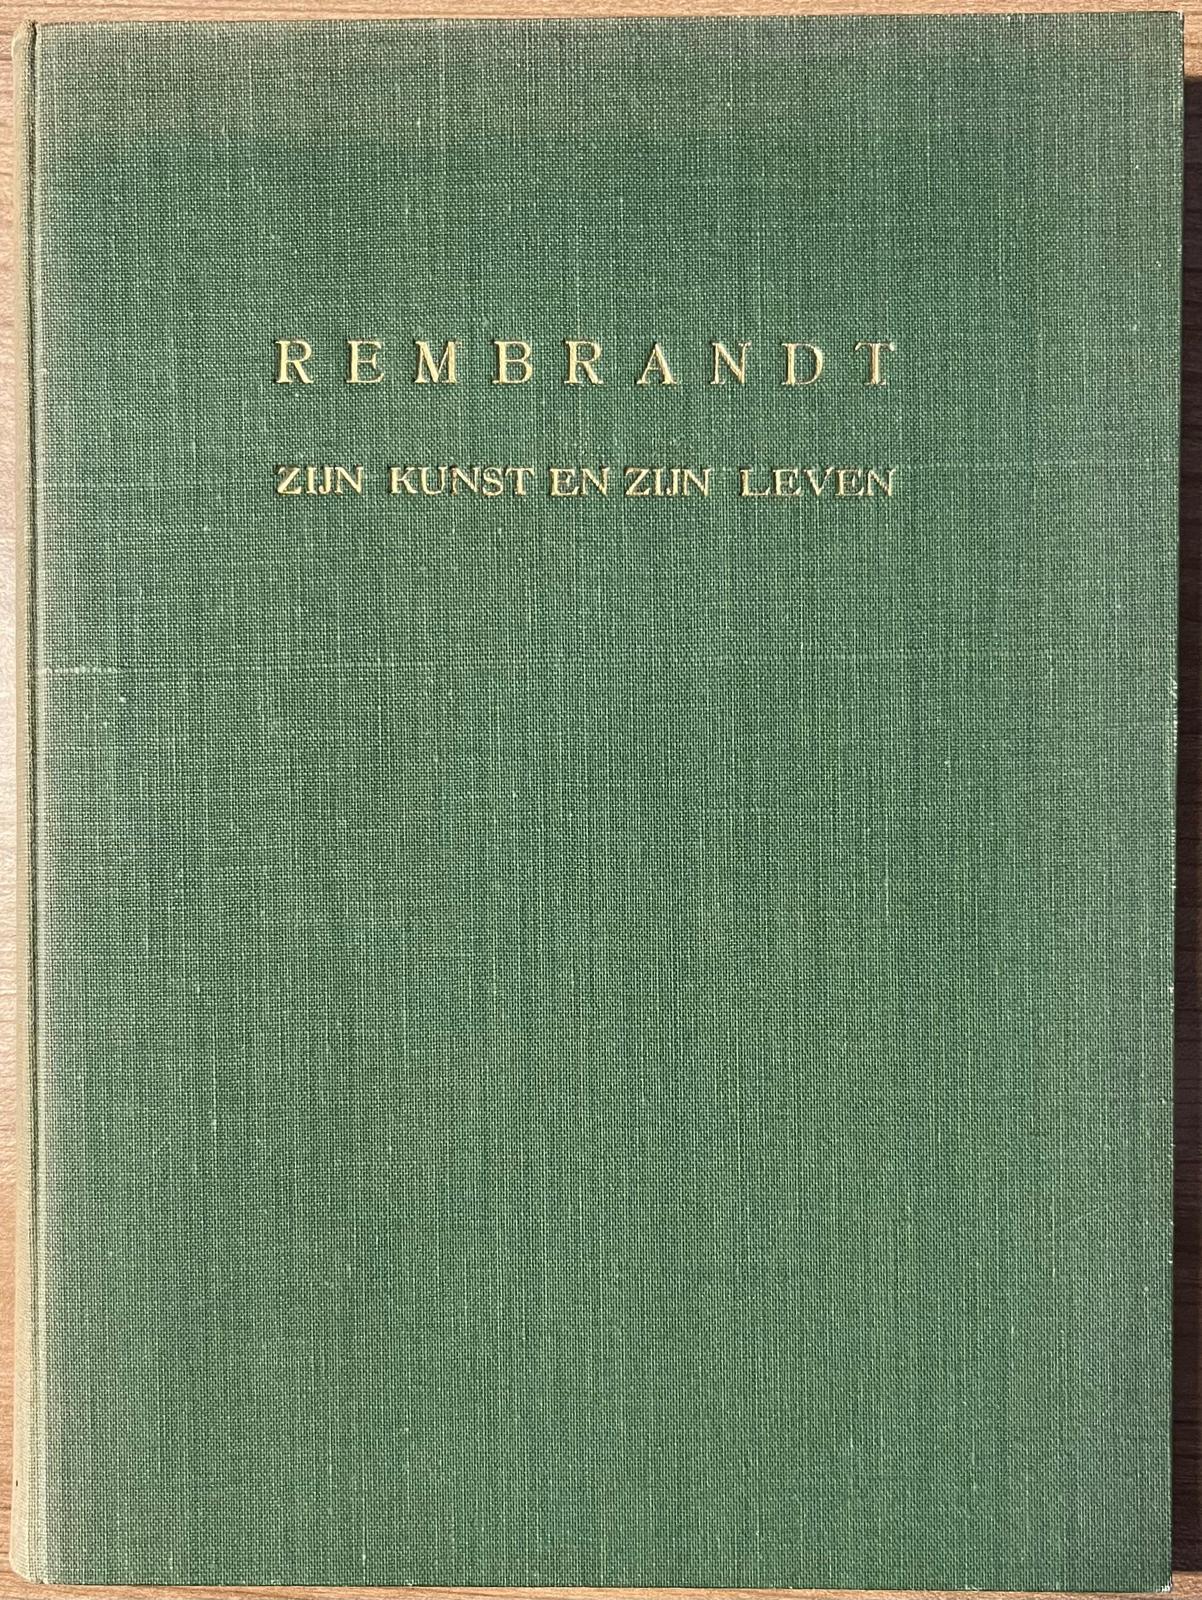 Rembrandt, s.a., Monograph | Rembrandt. Zijn kunst en zijn leven. Uitgeverij "In den Toren", Naarden, s.a., 133 pp.